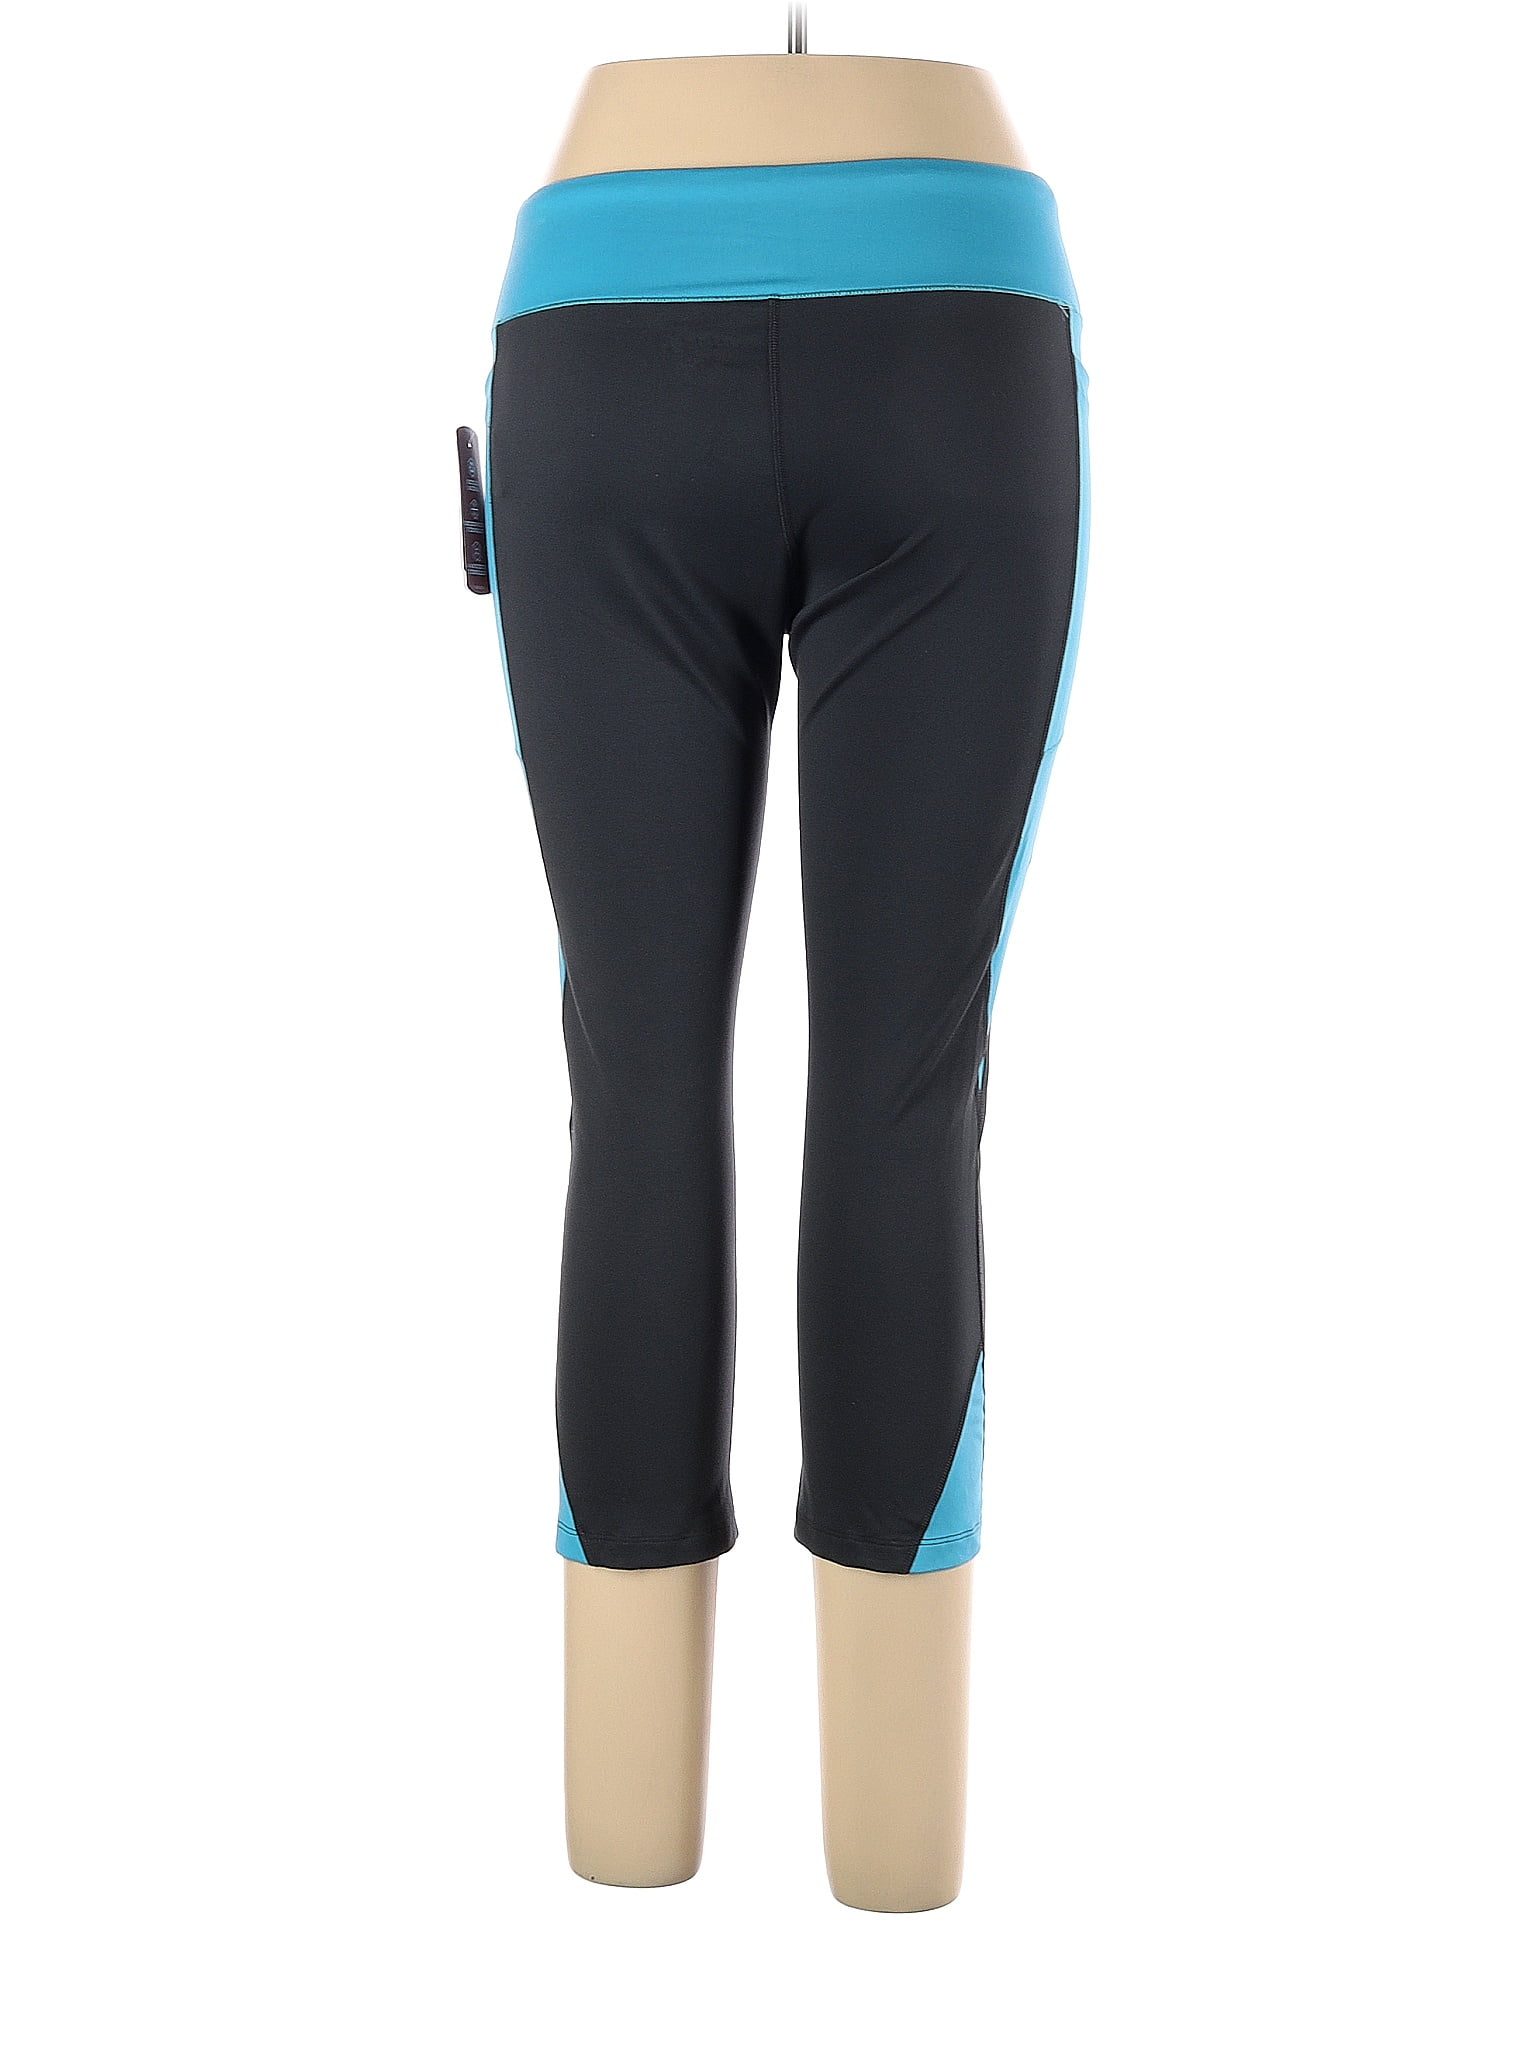 Women's 3/4 running leggings